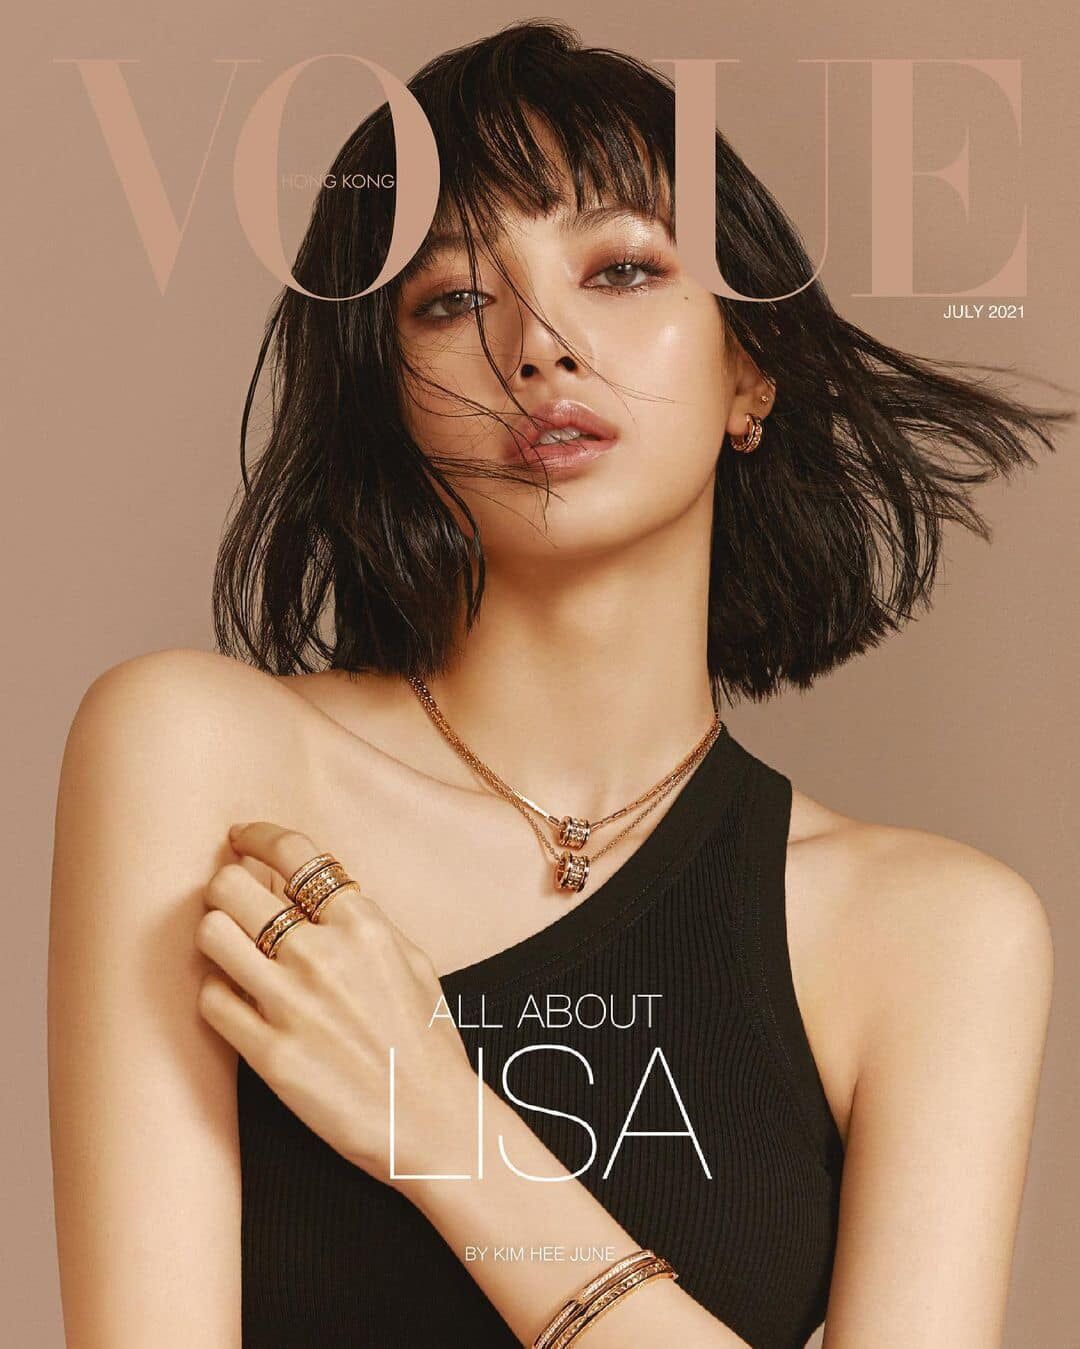 Lisa xuất hiện “nóng bỏng” trên bìa tạp chí Vogue Hồng Kông-3